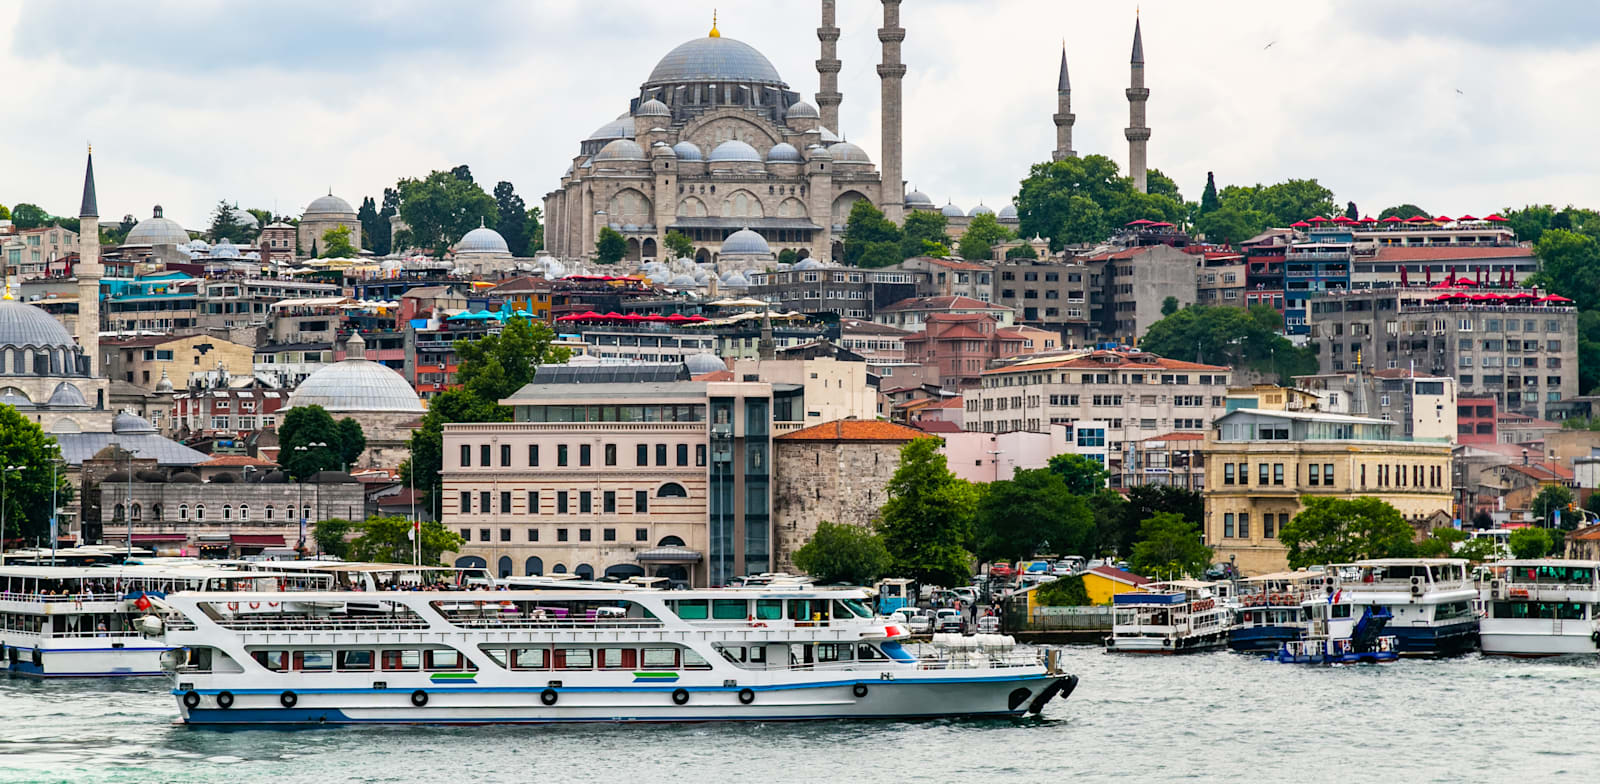 איסטנבול, הבירה הכלכלית של טורקיה. אינפלציית המזון במדינה היא הרביעית בחומרתה בעולם. / צילום: Shutterstock, nataschen